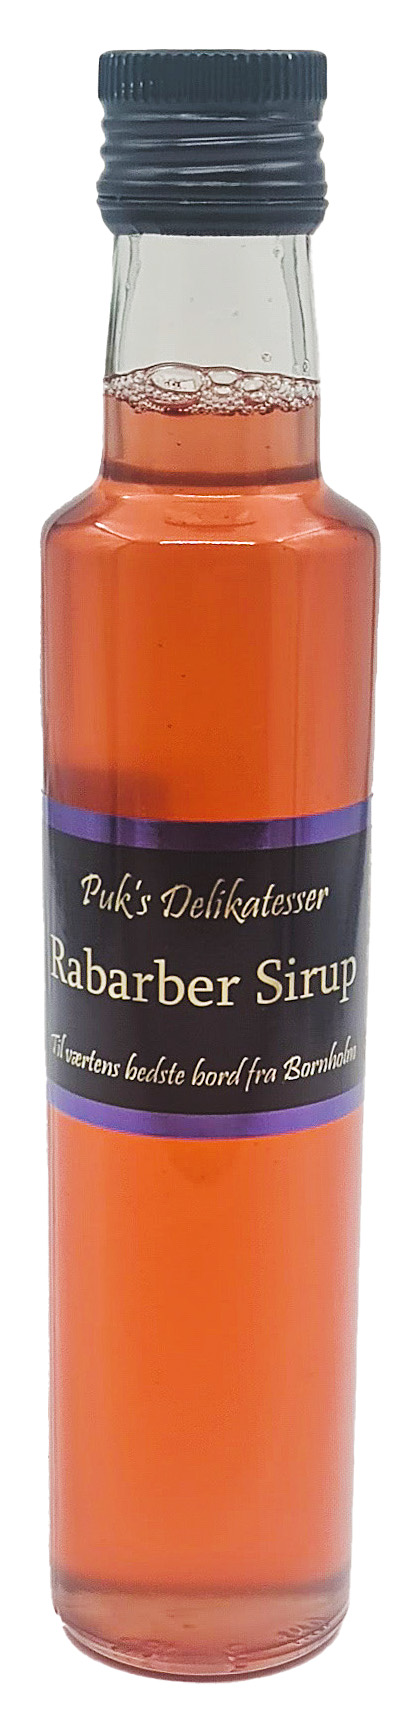 Rabarber Sirup